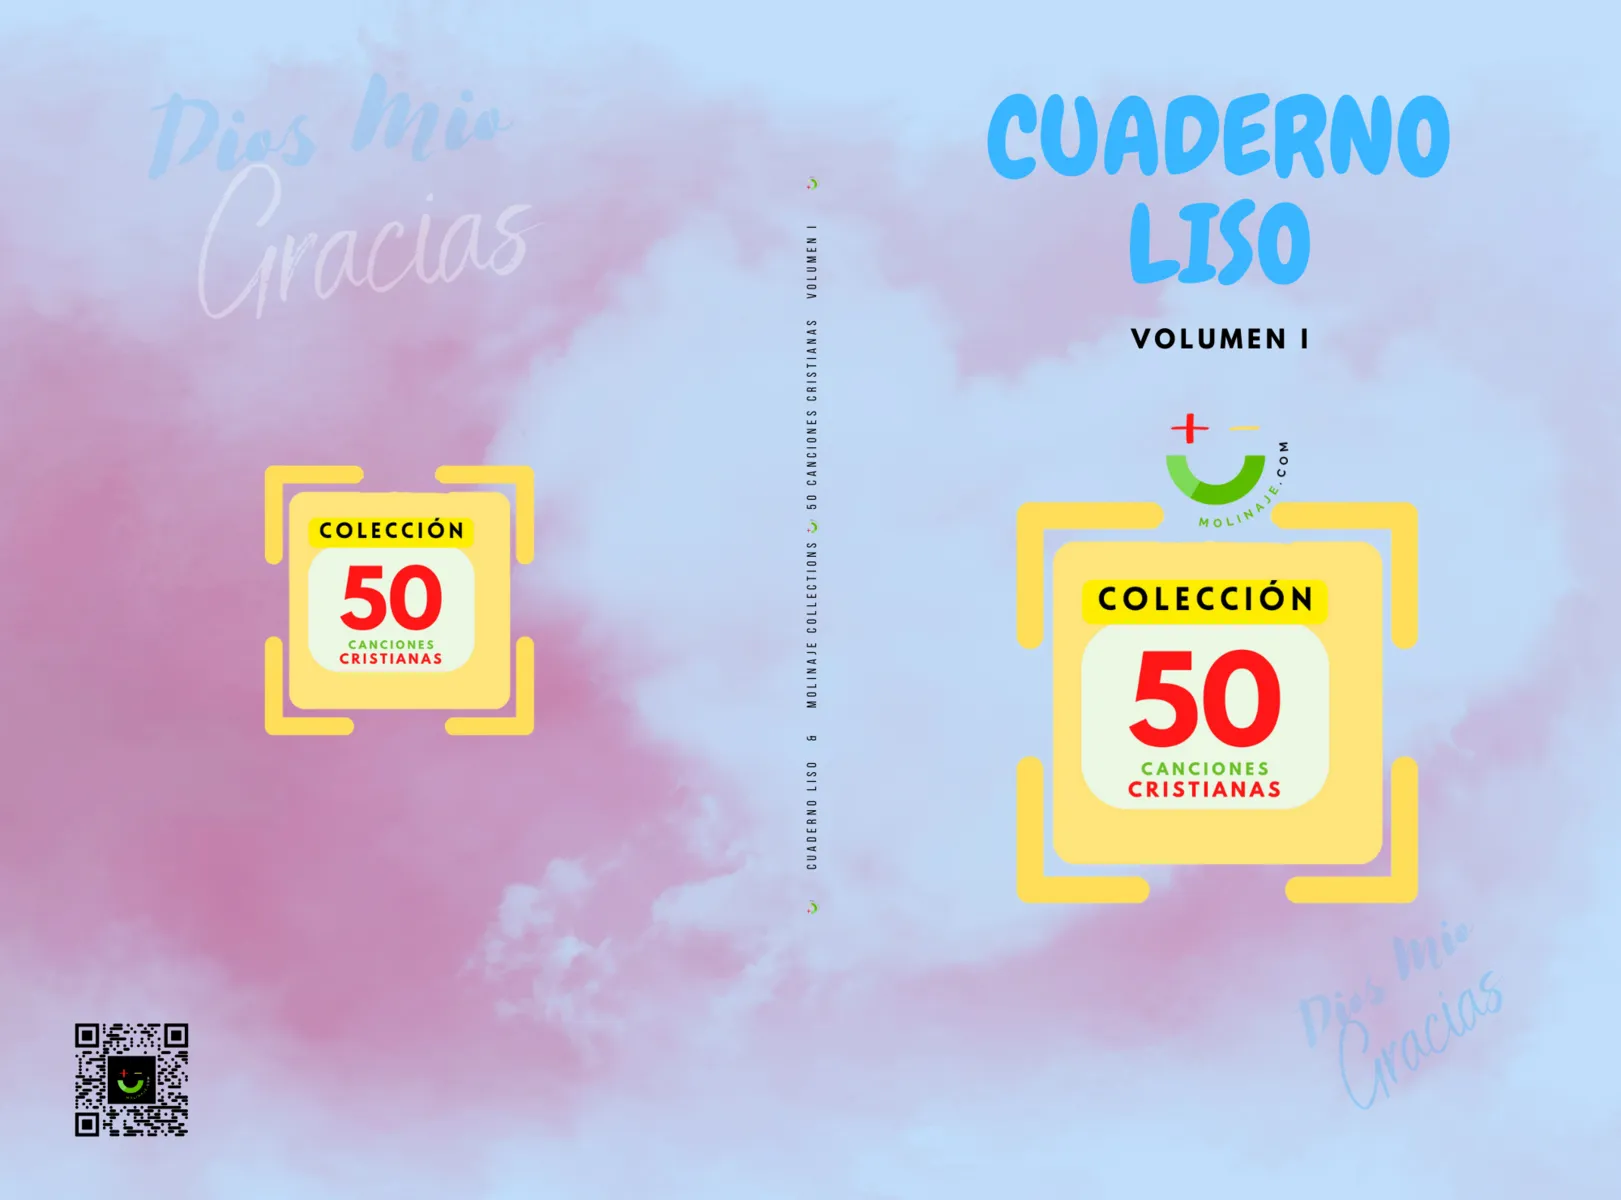 CUADERNO LISO (PACKS) & 50 CANCIONES CRISTIANAS